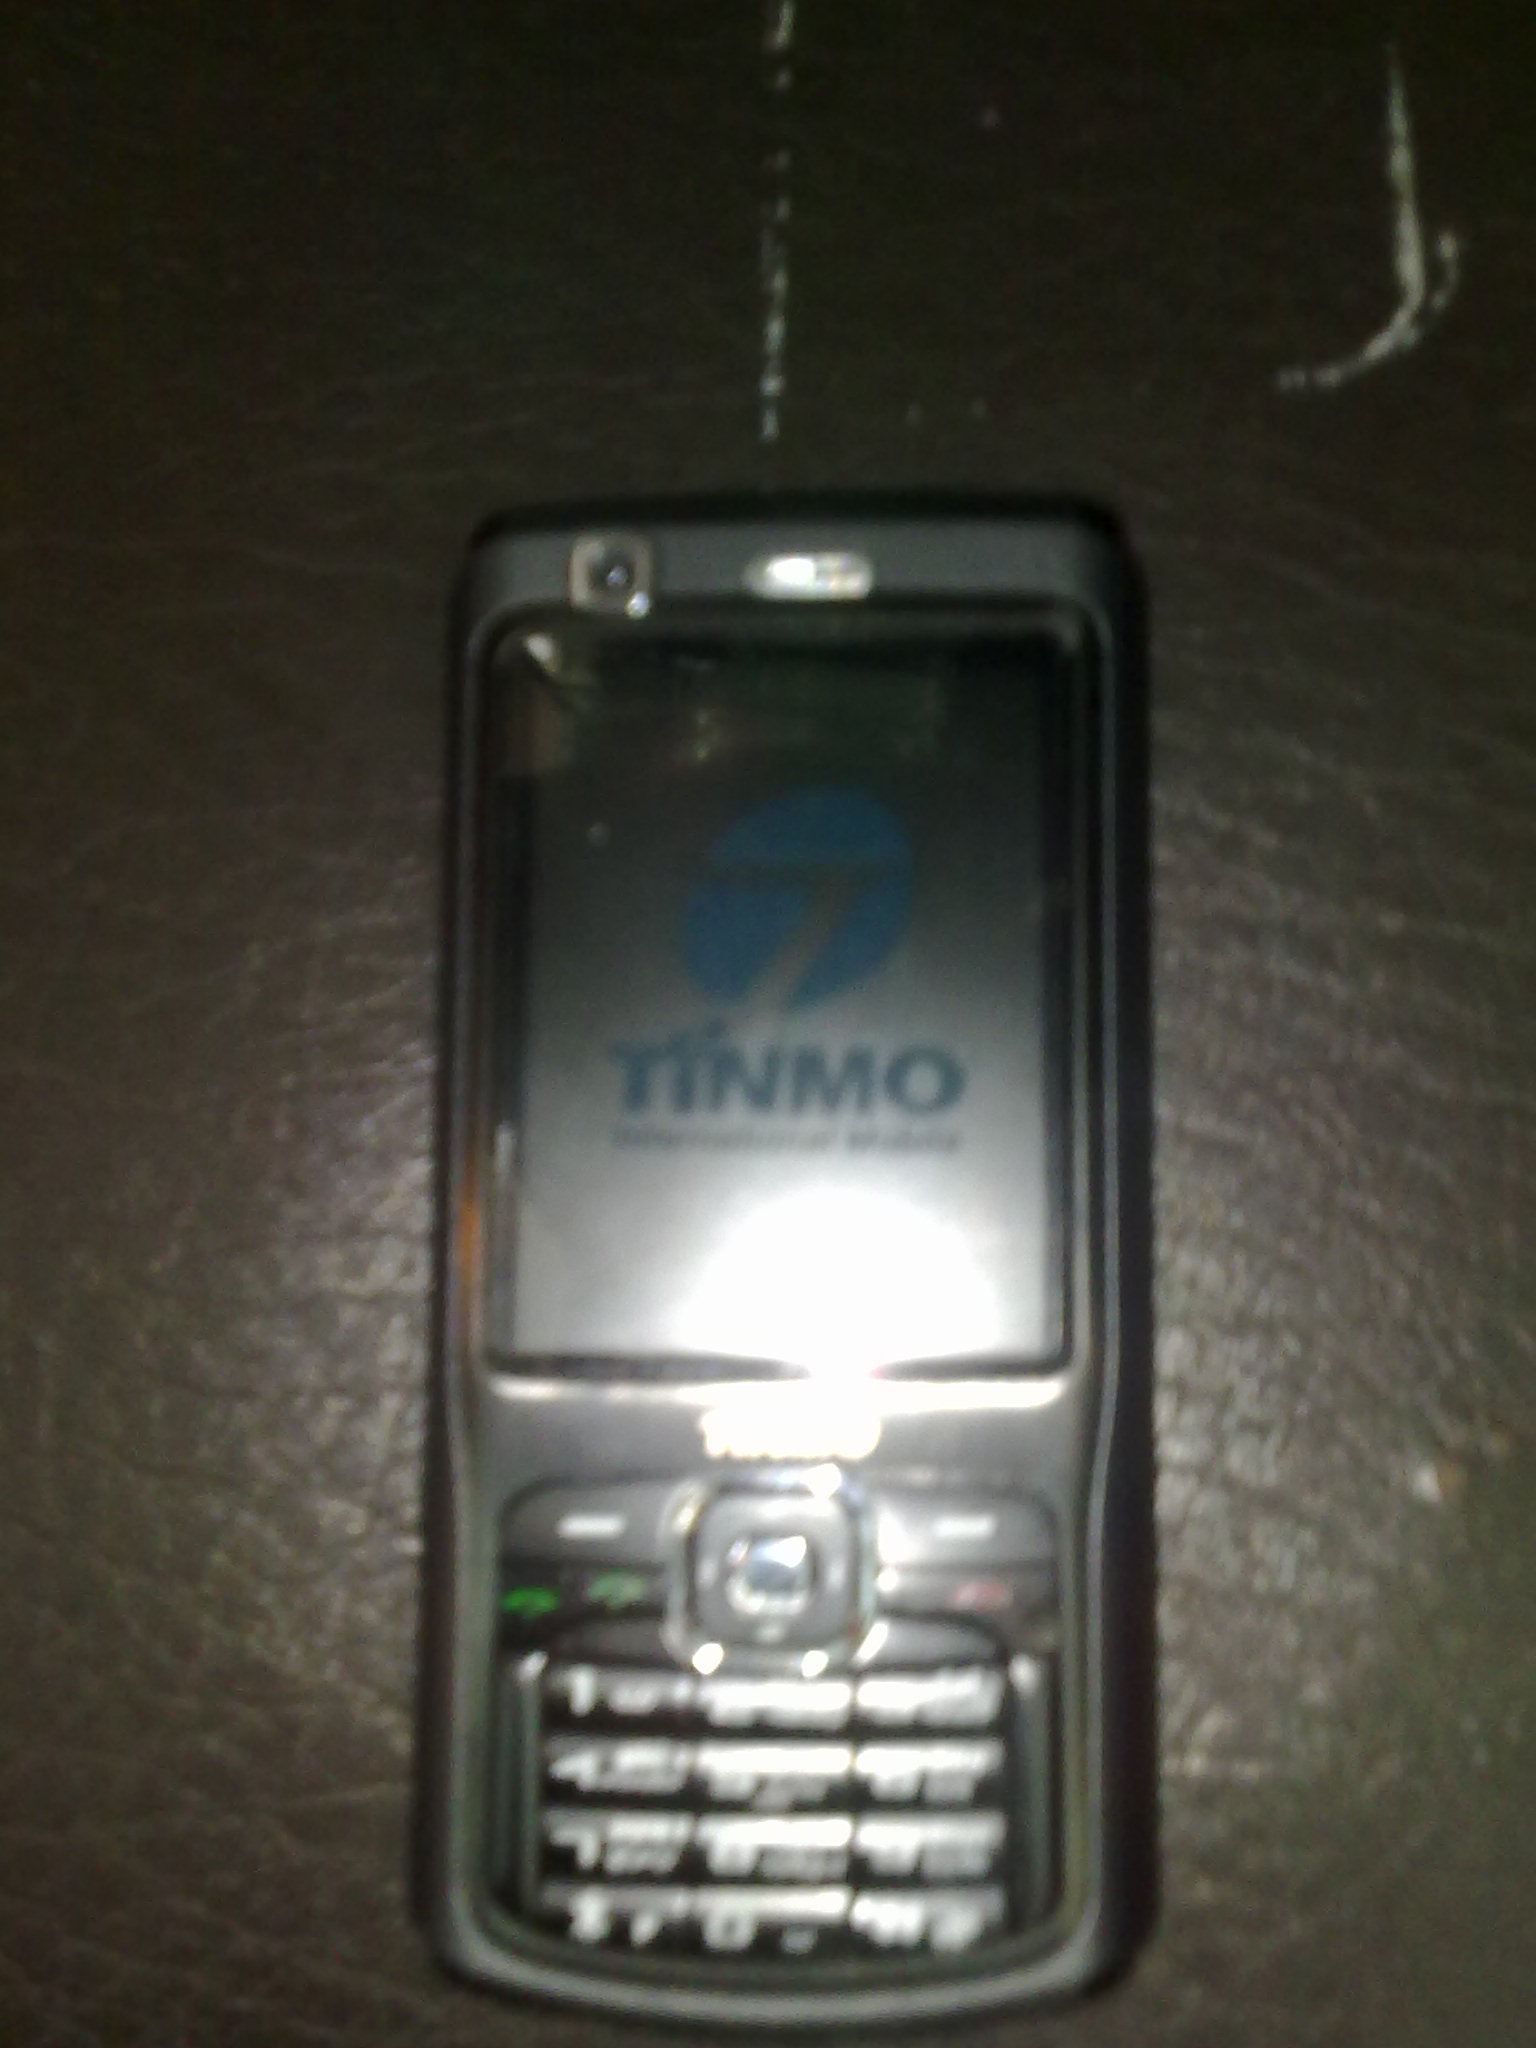     N70 F900 TINMO